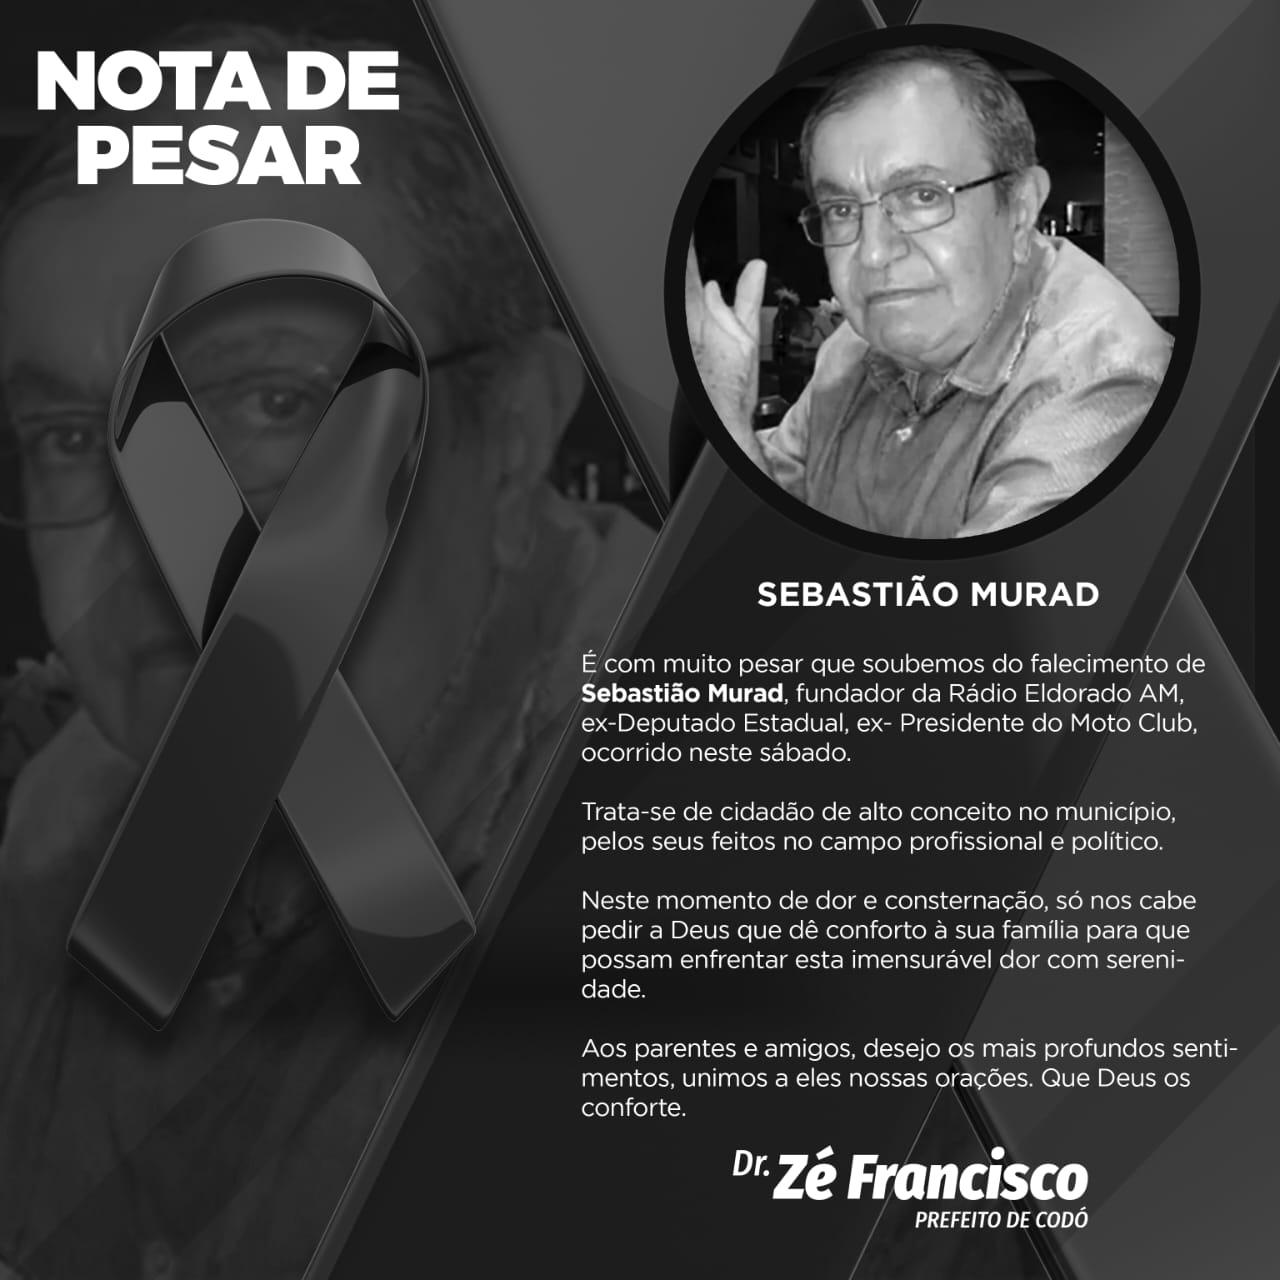 Prefeito Zé Francisco emite nota de pesar pelo falecimento do ex-deputado estadual Sebastião Murad